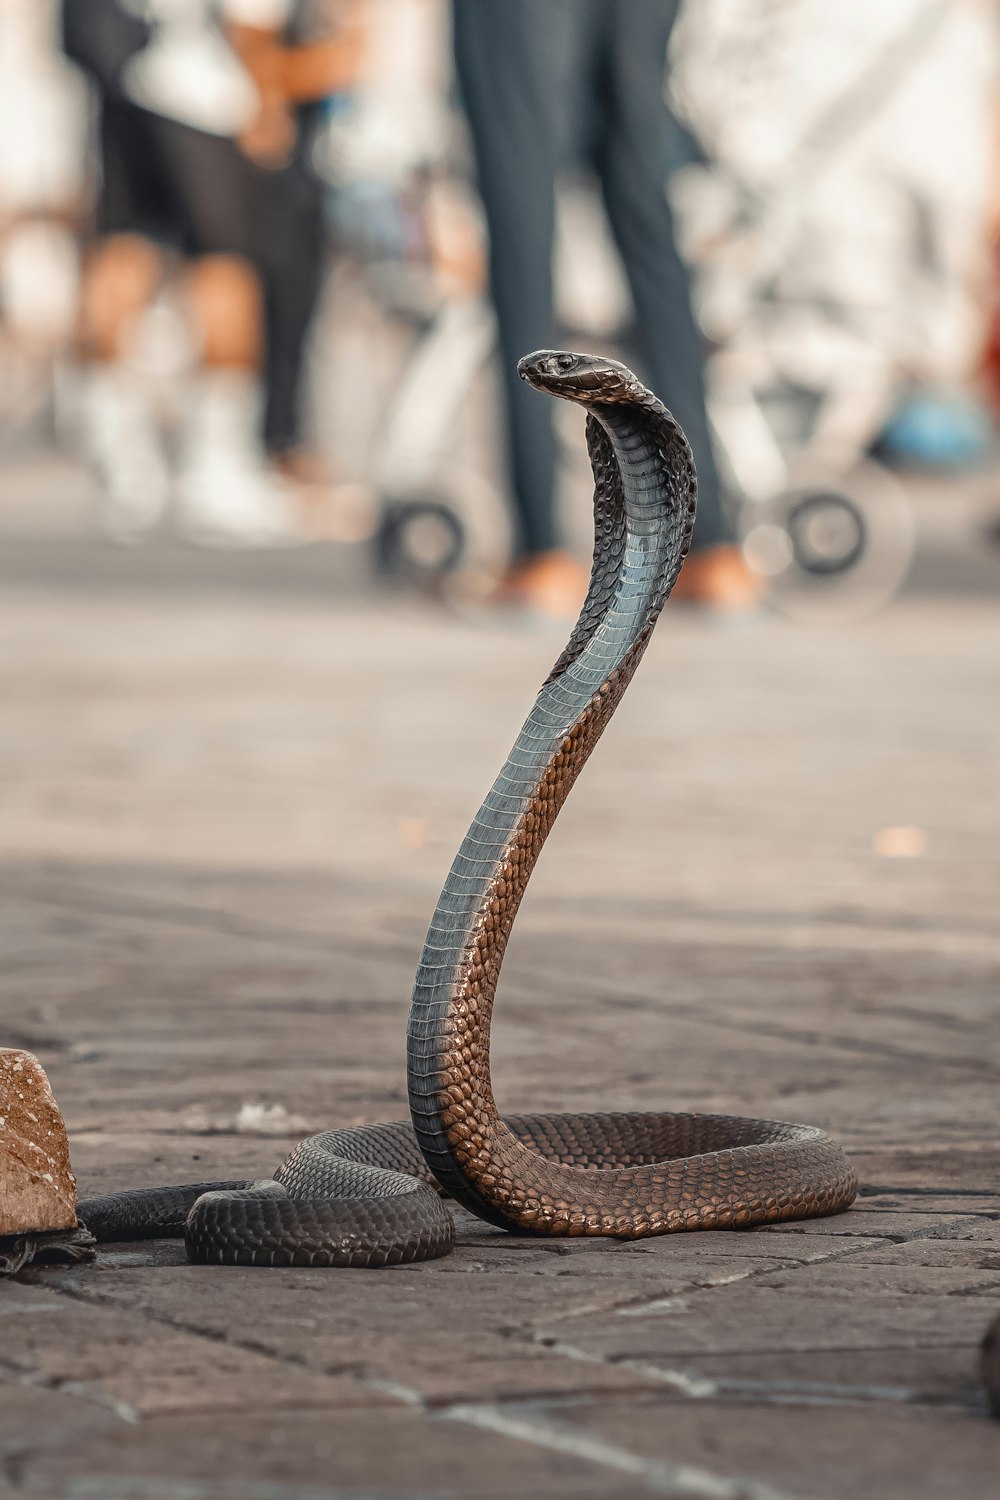 un serpent sur le sol avec une personne en arrière-plan